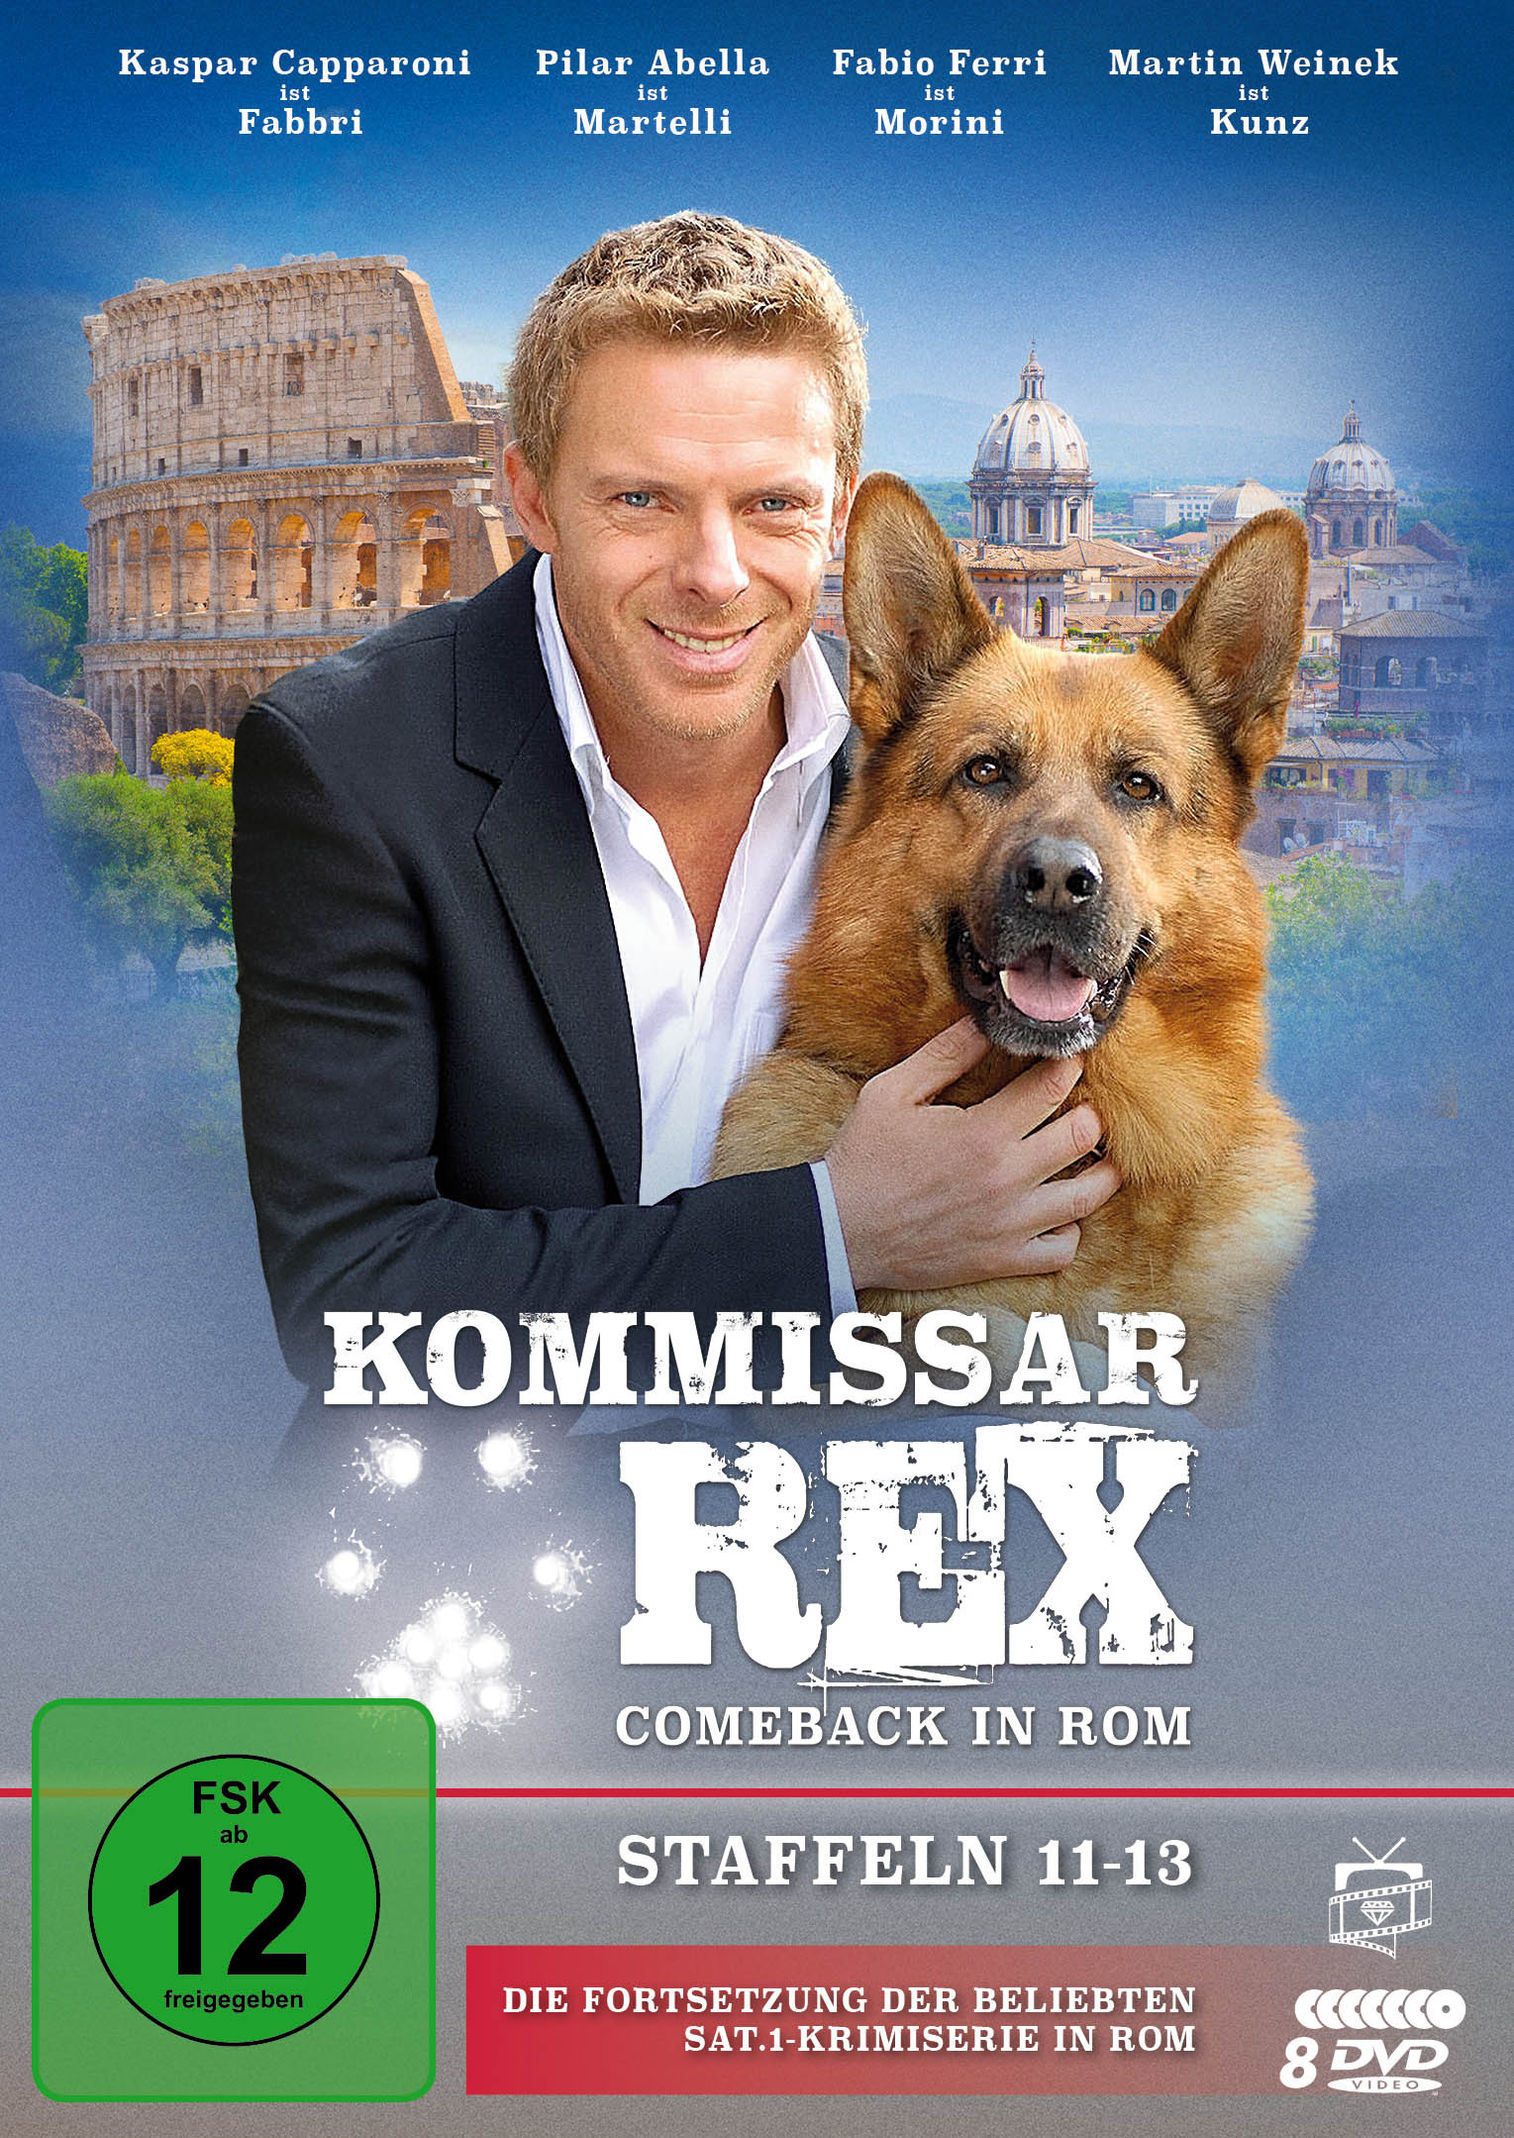 Kommissar Rex - Comeback in Rom Staffeln 11-13 DVD | Weltbild.de